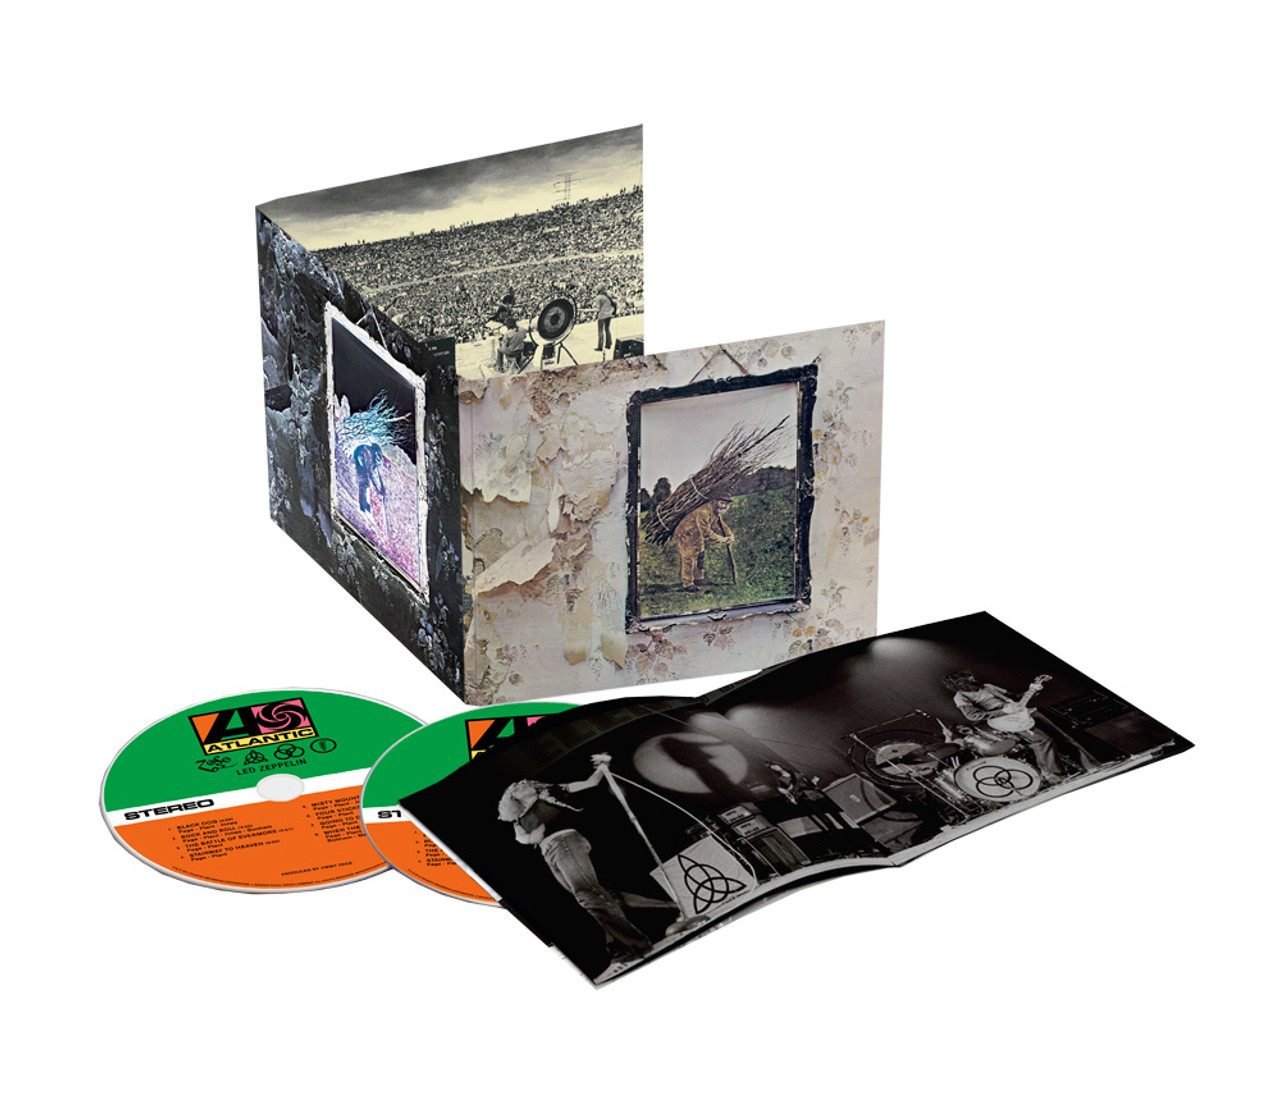 Led Zeppelin IV CD